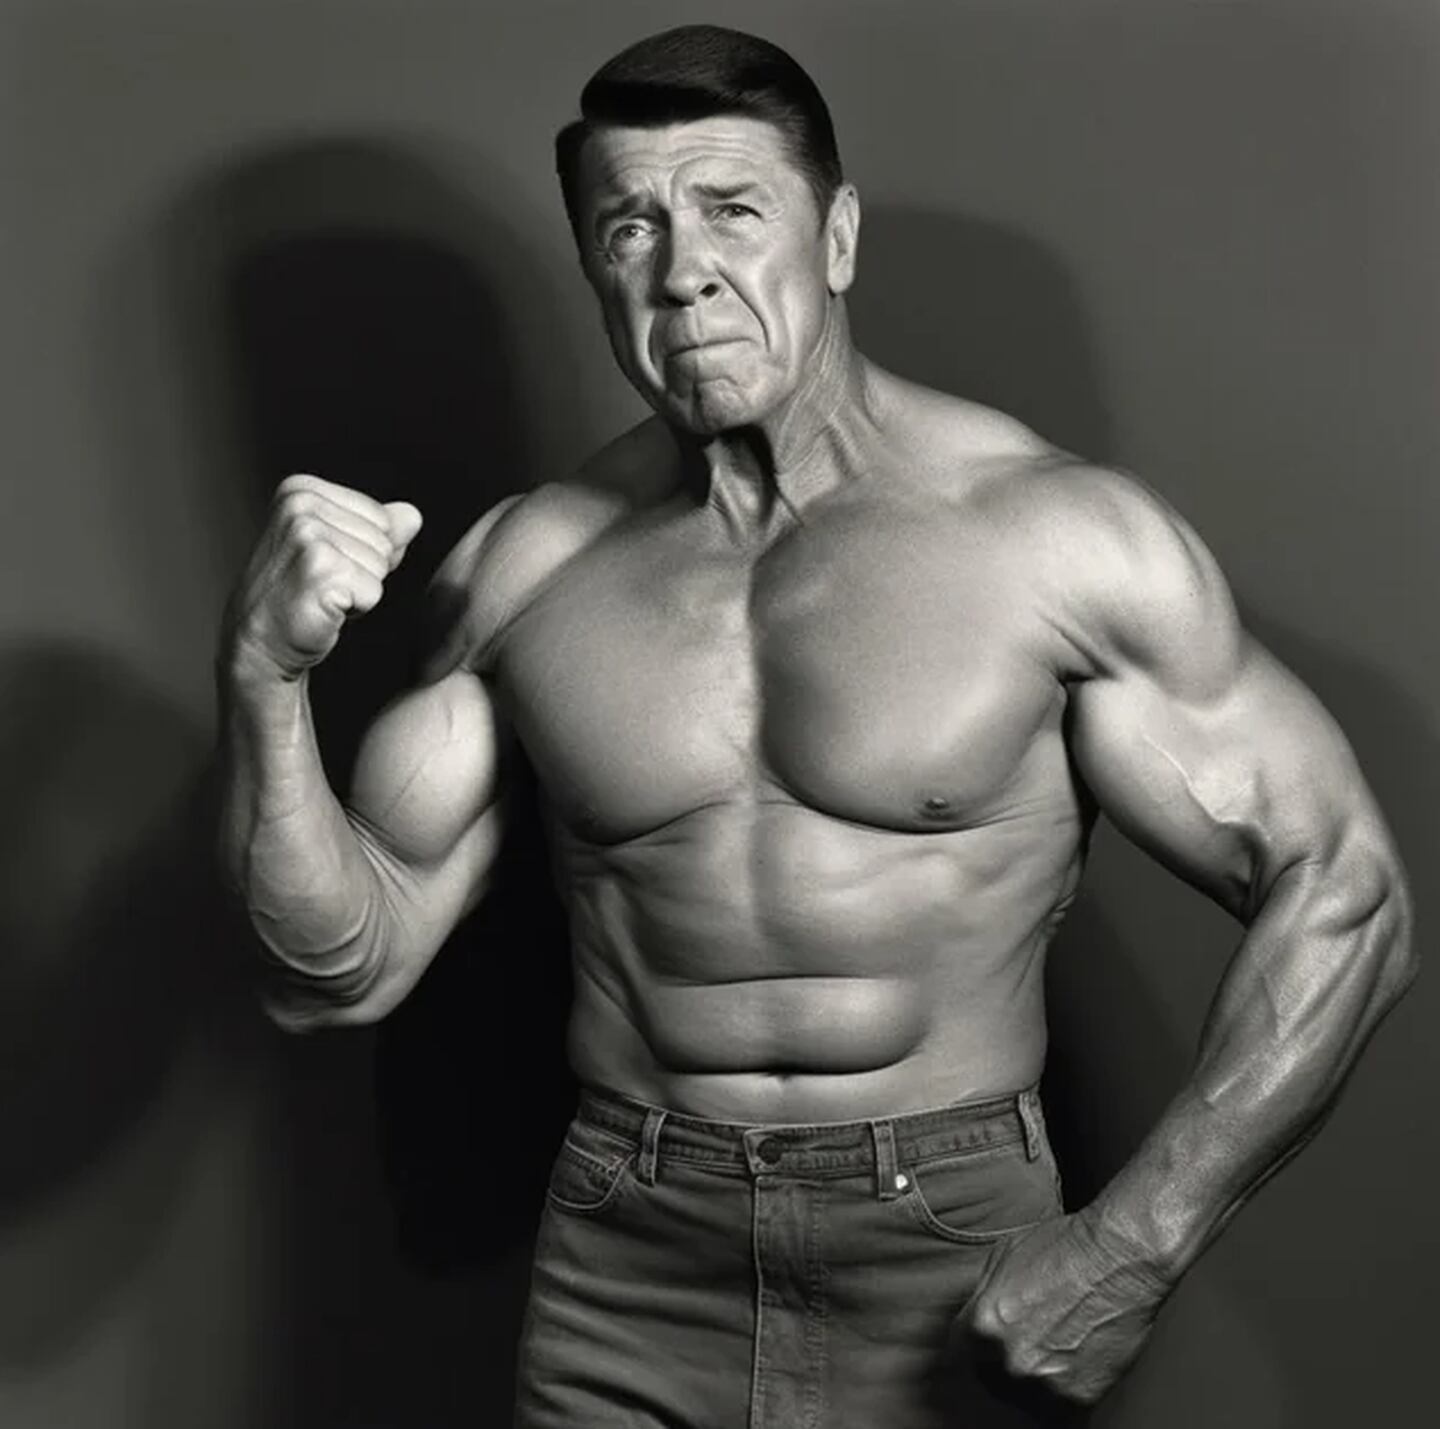 Ronald Reagan con cuerpo atlético, según la IA